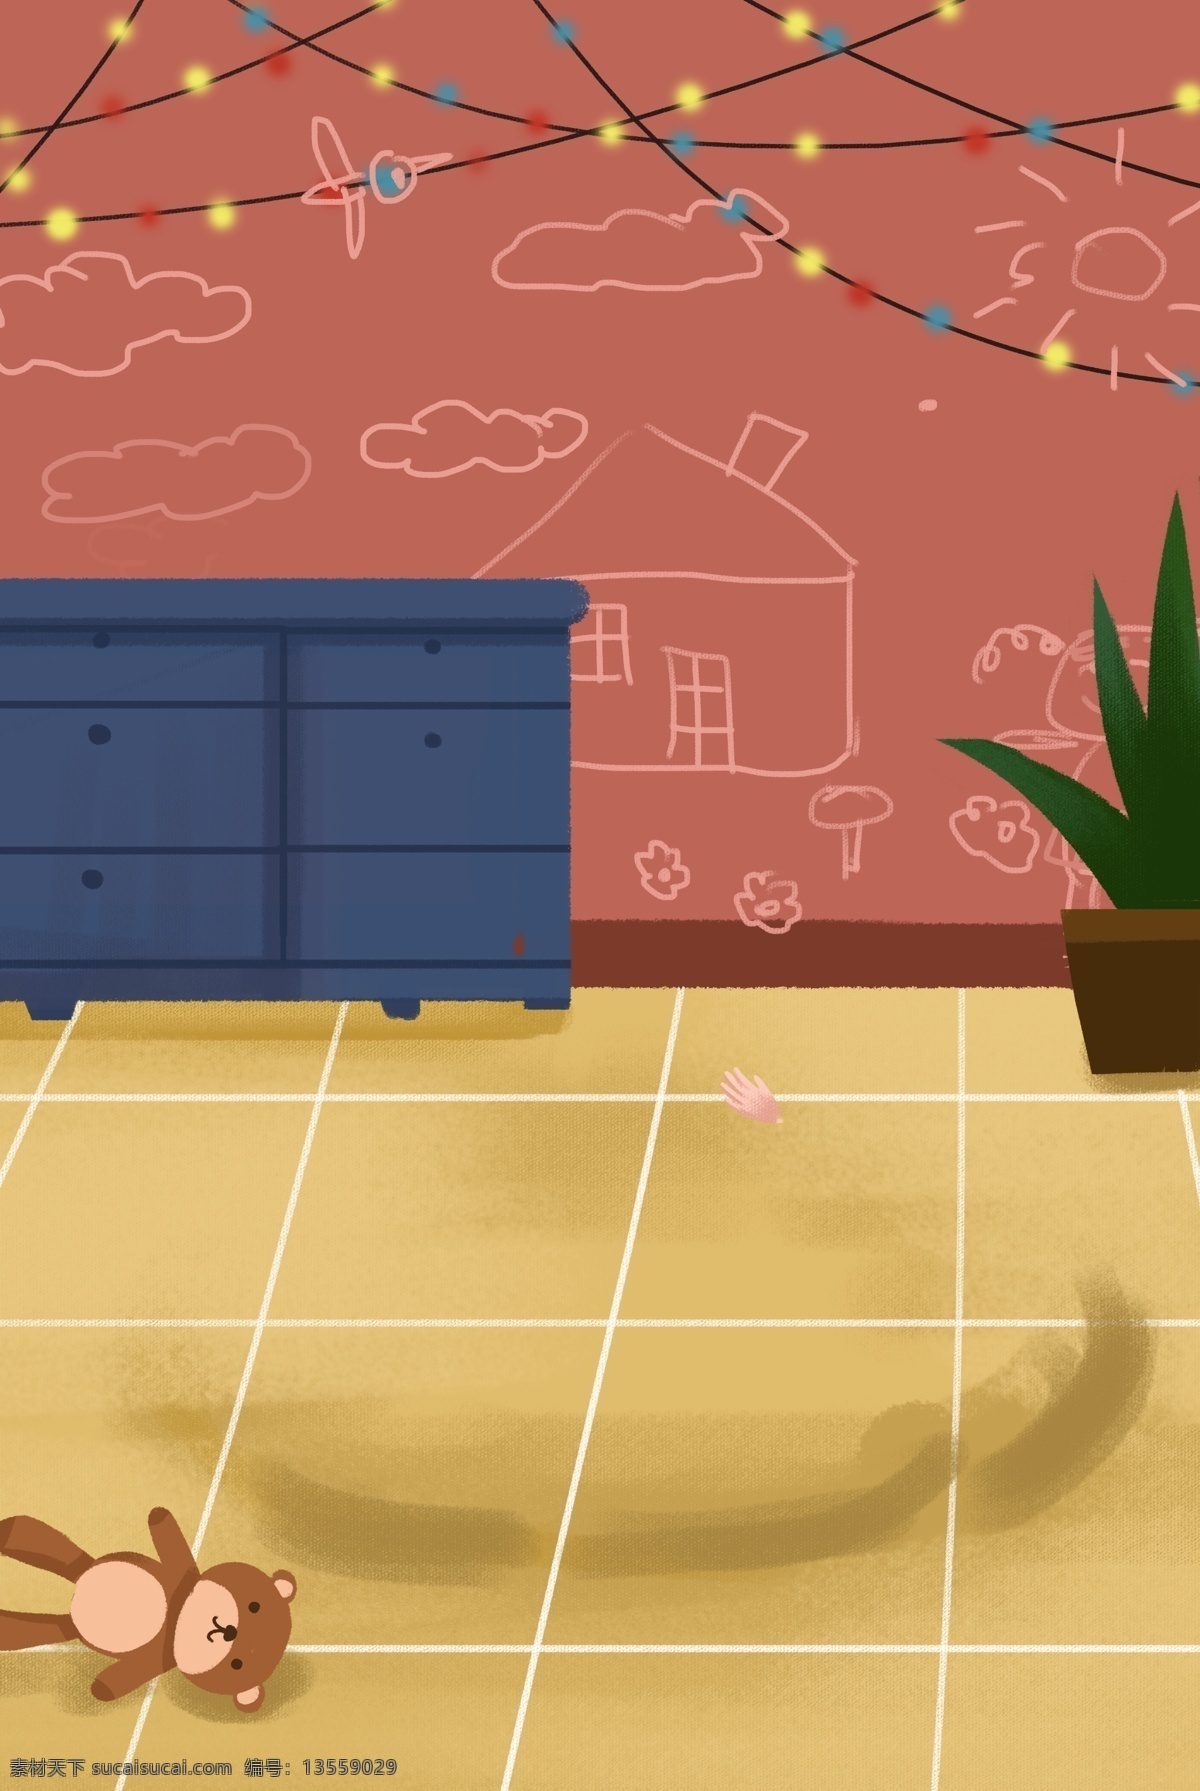 彩色 家庭 内室 温暖 背景 粉色 海报 家具 玩具 盆栽